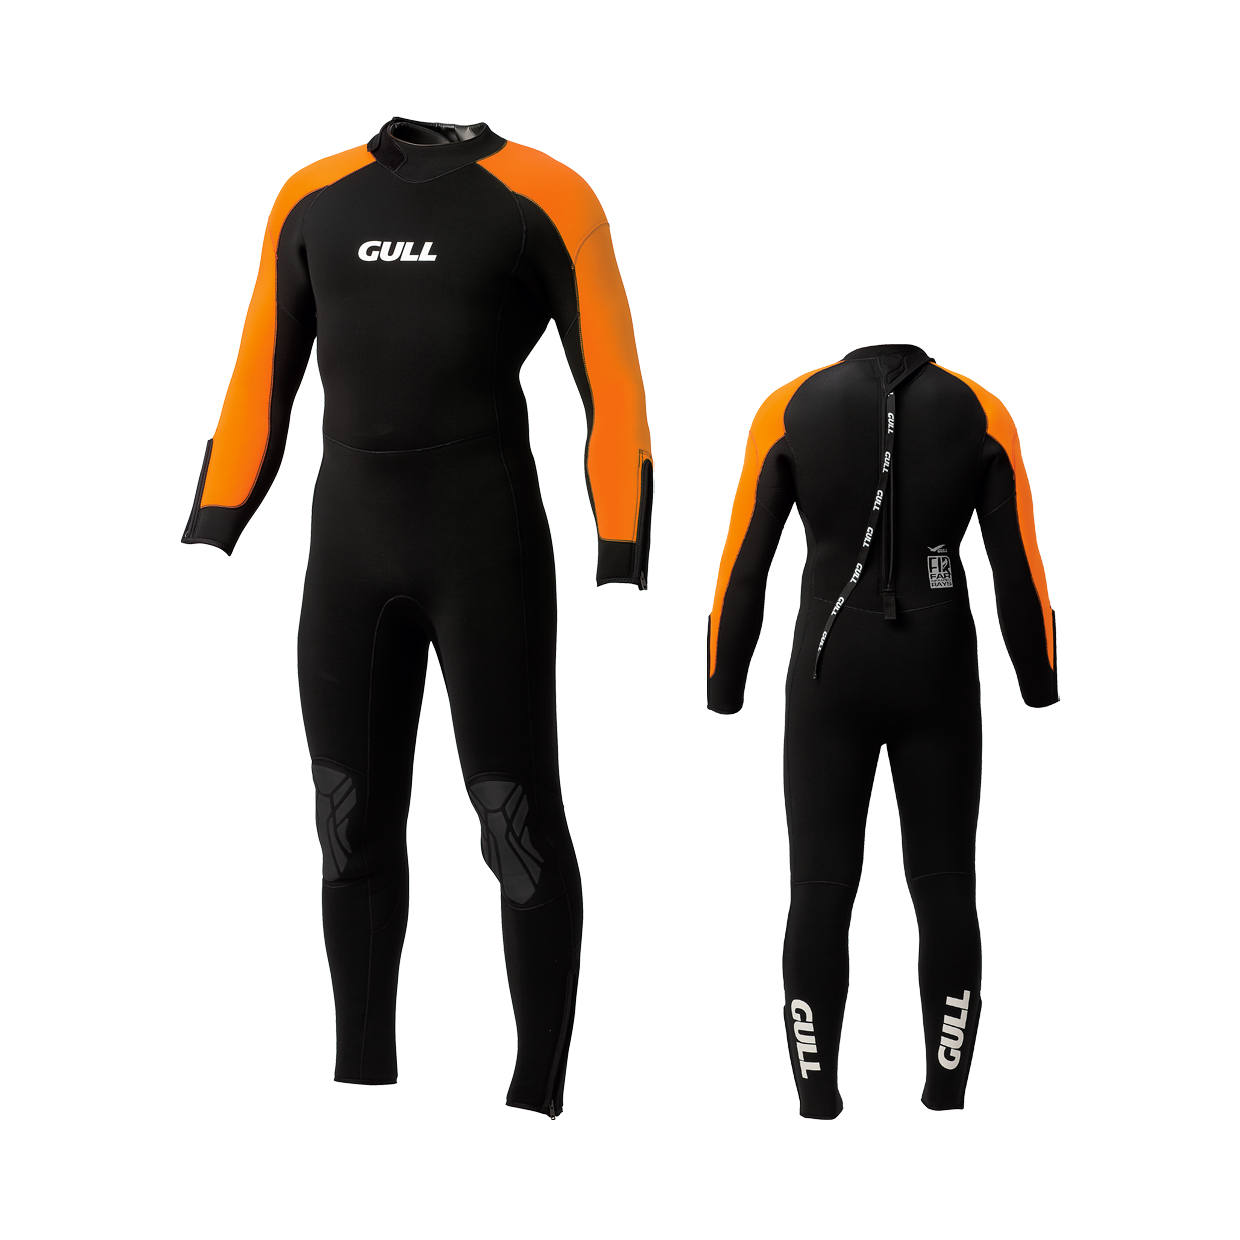 BEUCHAT ブシャ ブッシャー FOCEA  メンズ 男性 ネオプレーン 5ｍｍ 5ミリ スキューバダイビング スクーバ スキン ダイビング ウェットスーツ  ウエットスーツ